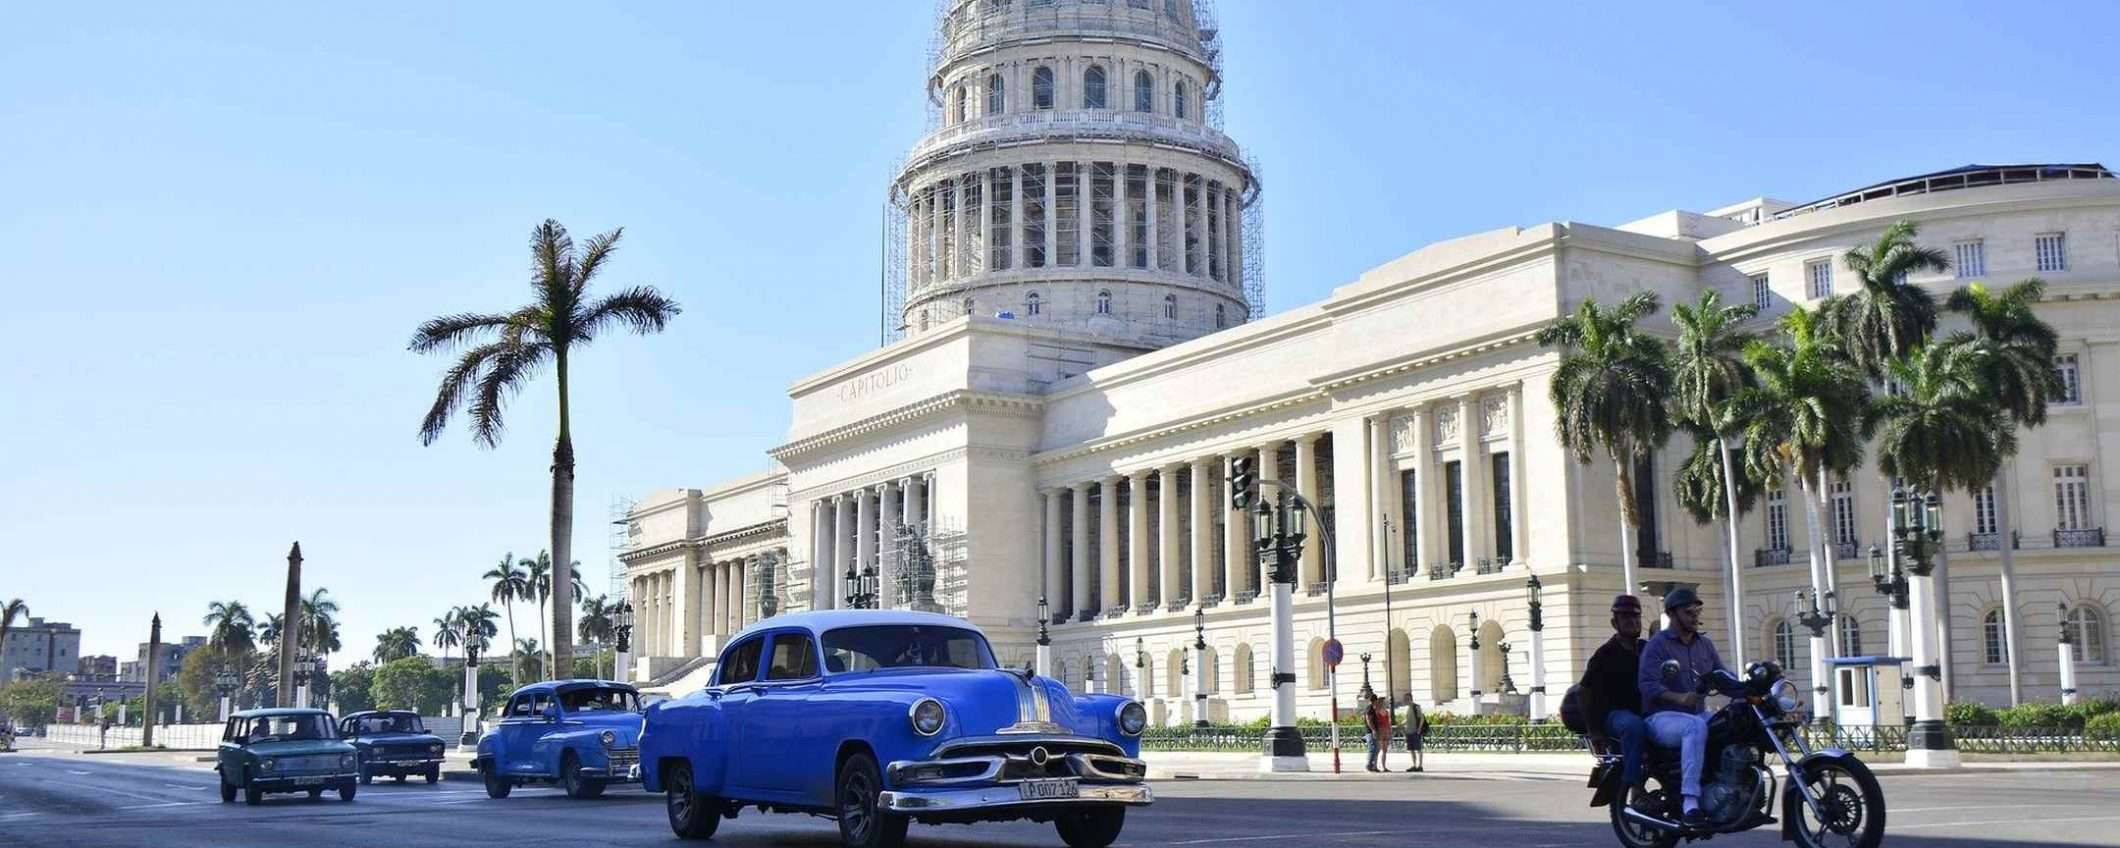 Cuba blocca l'accesso a social media e app